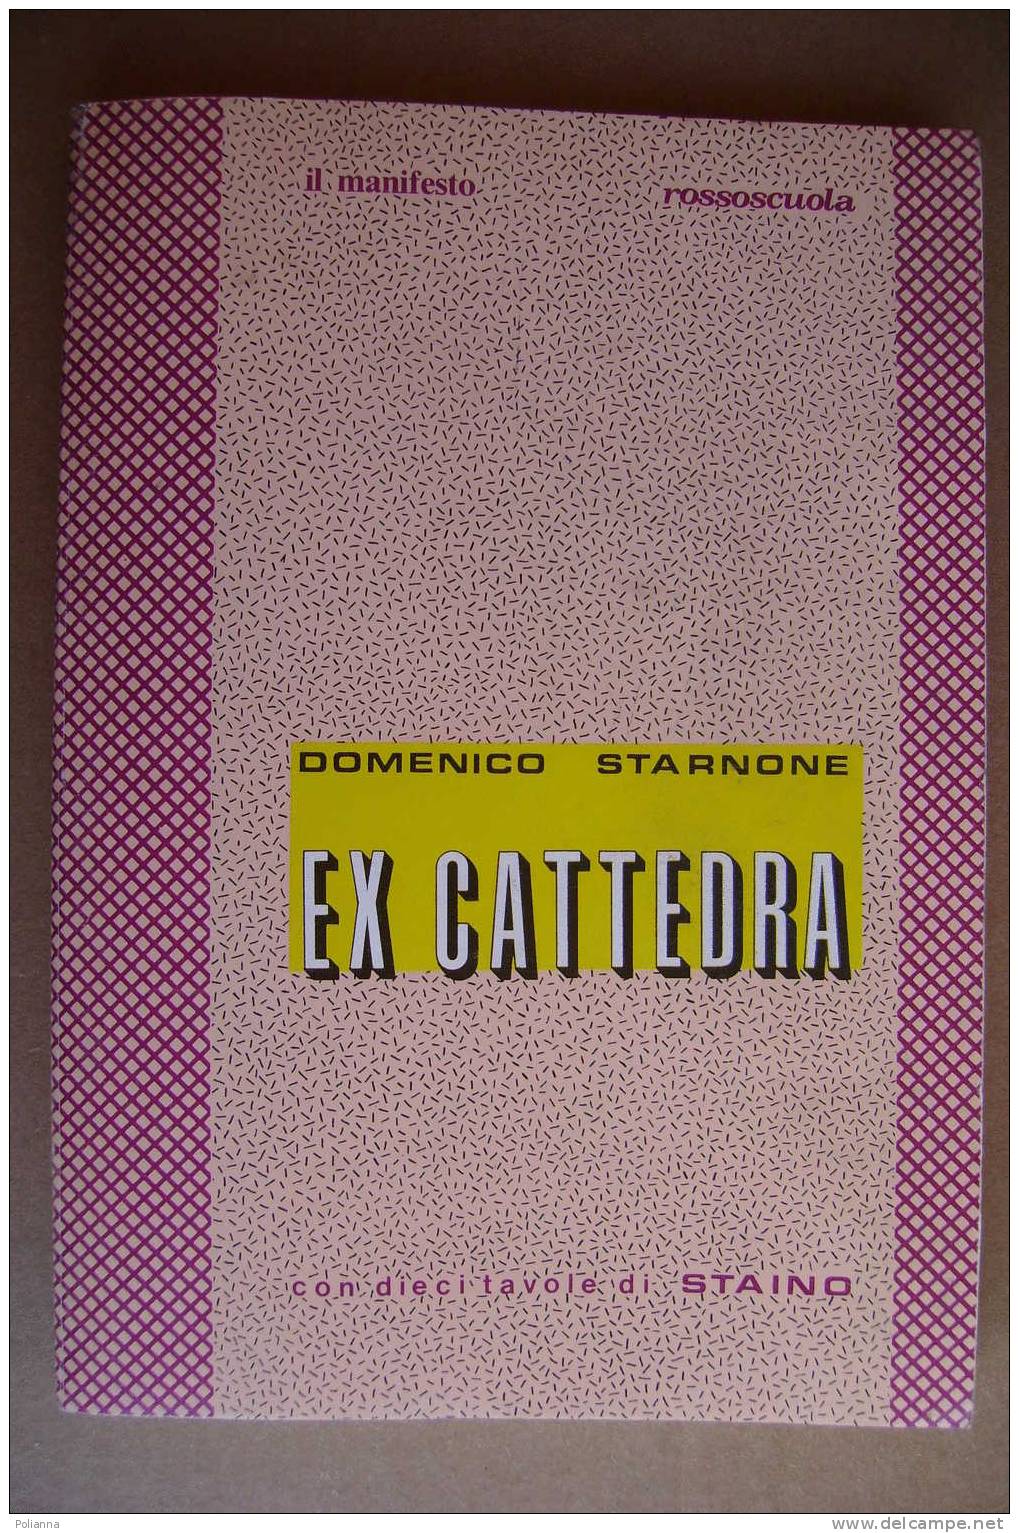 PAO/59 Starnone EX CATTEDRA Il Manifesto - Suppl. A Rossoscuola N.38/10 Tav. STAINO - Società, Politica, Economia